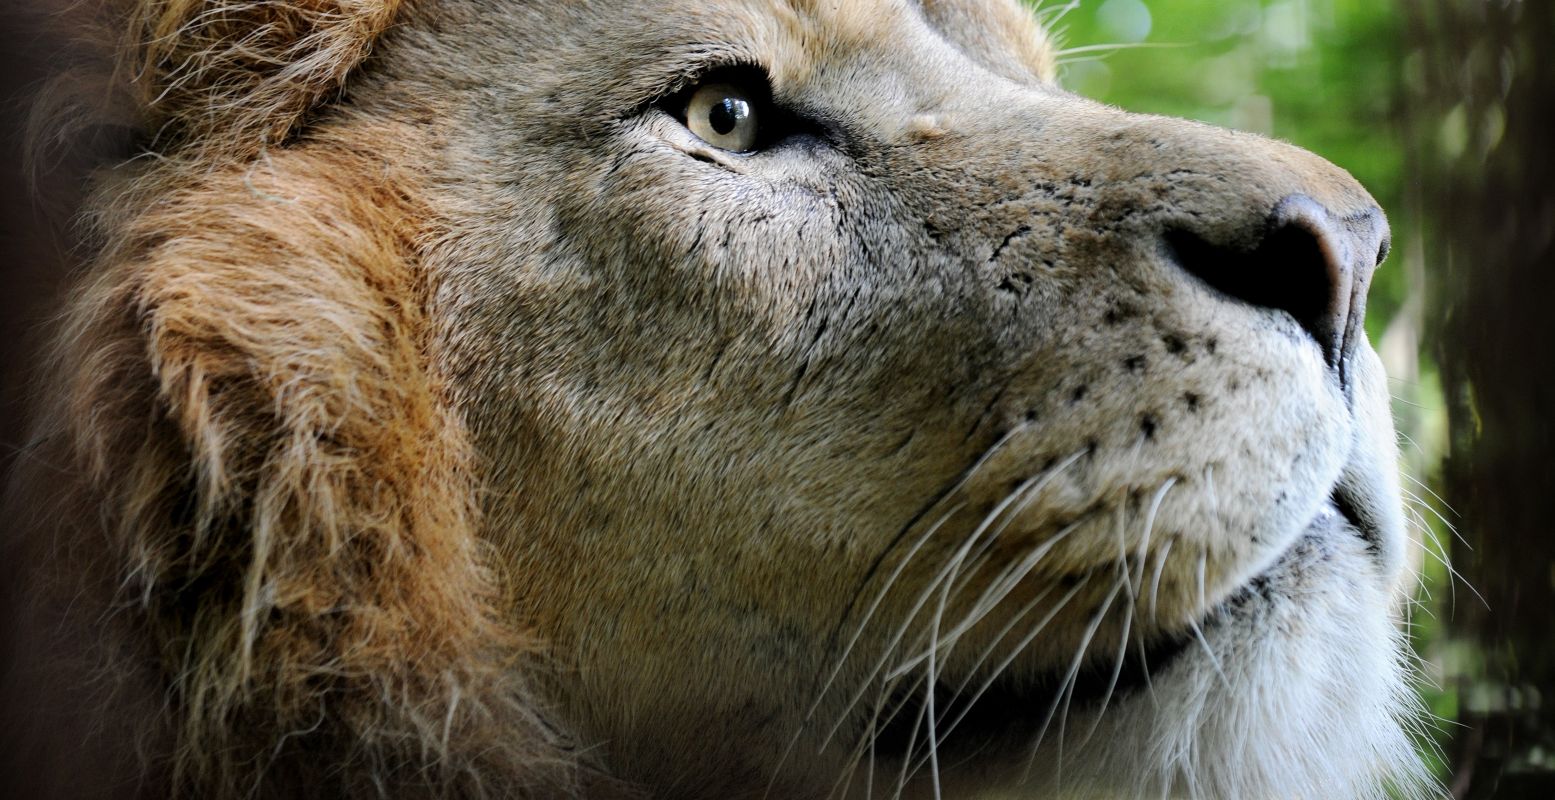 Ontmoet naast koning leeuw ook heel veel andere dieren in GaiaZOO. Foto: GaiaZOO